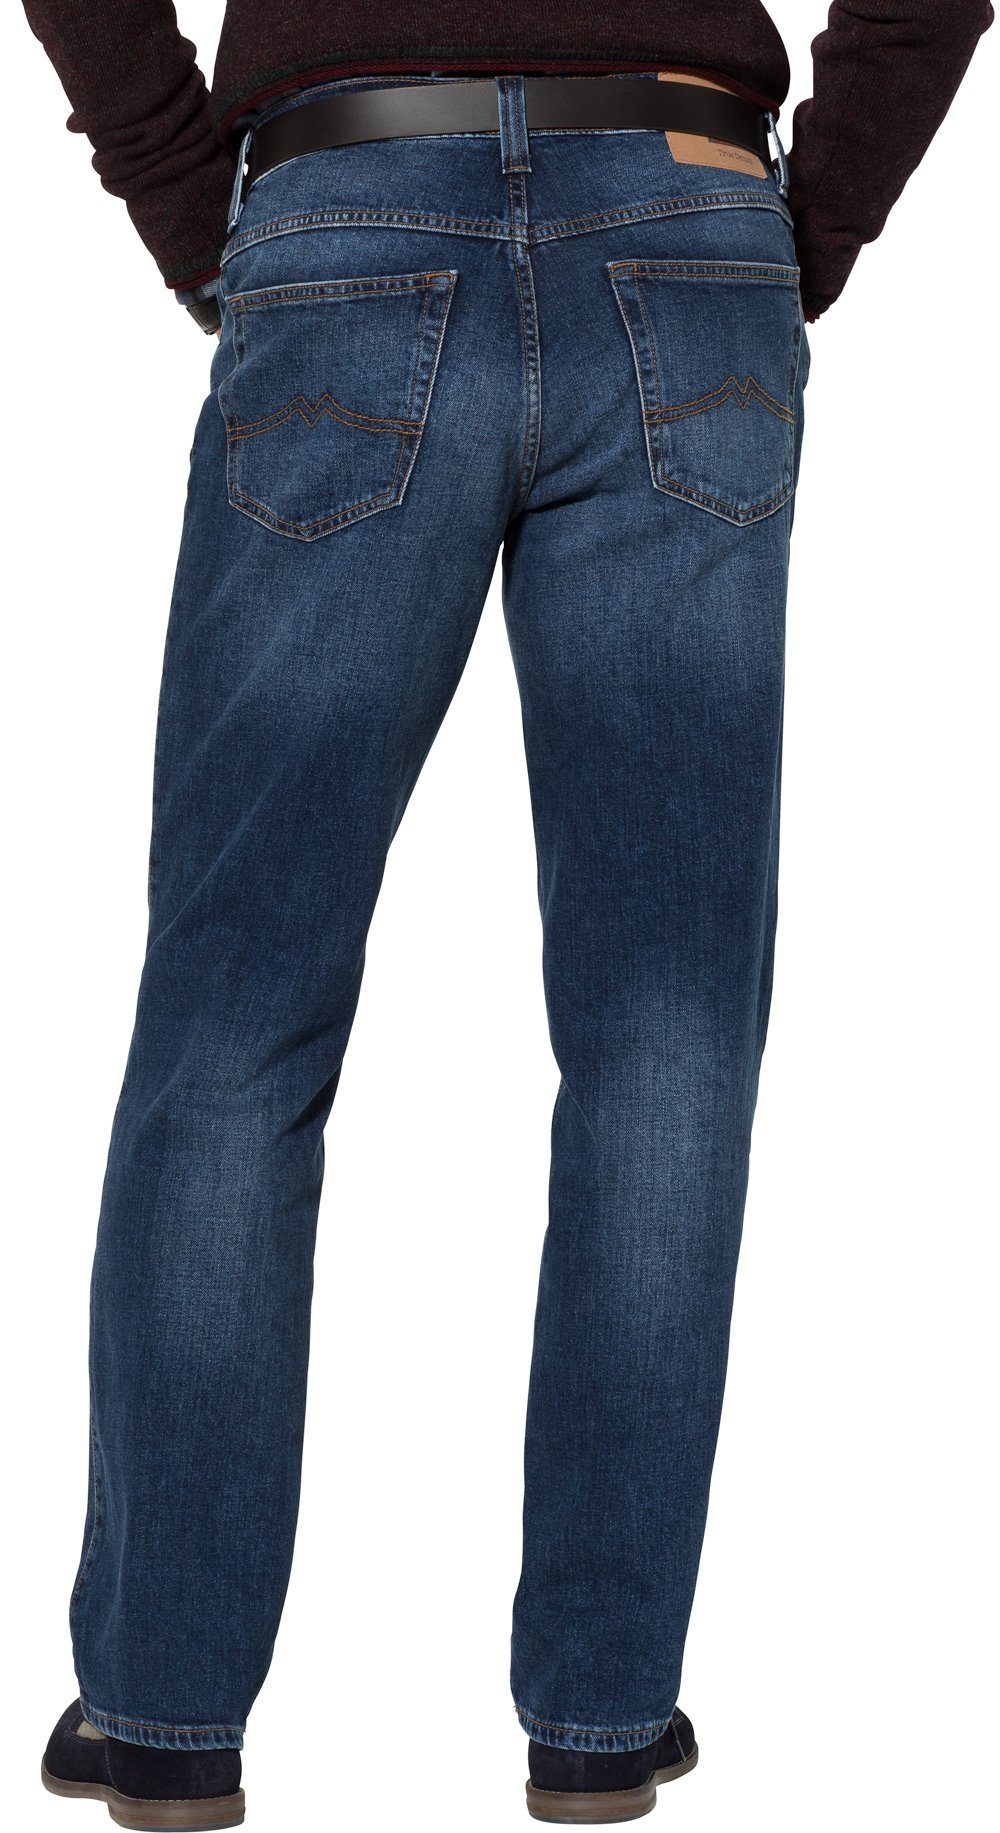 Bund Beinverlauf Stretch-Jeans MUSTANG blau und im 5-Pocket-Style, mit geradem Stretch